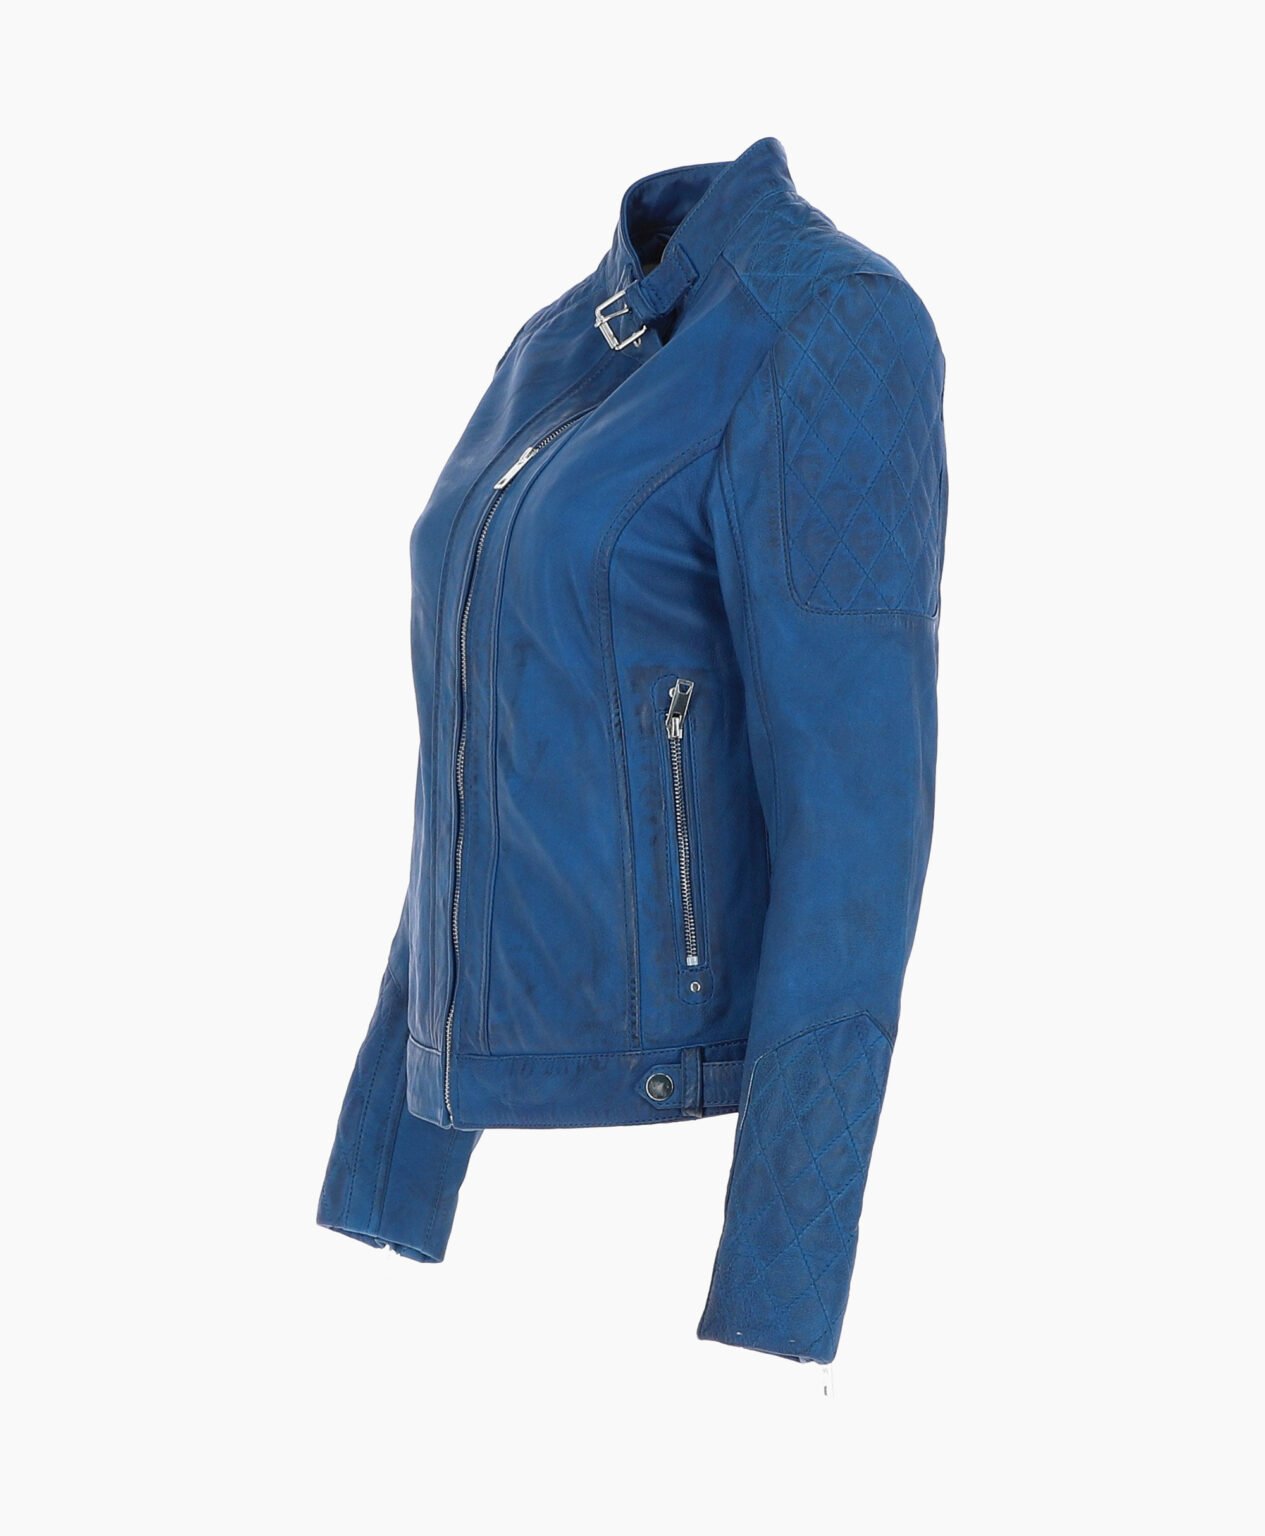 vogue-jacket-leather-jacket-blue-malibu-image201